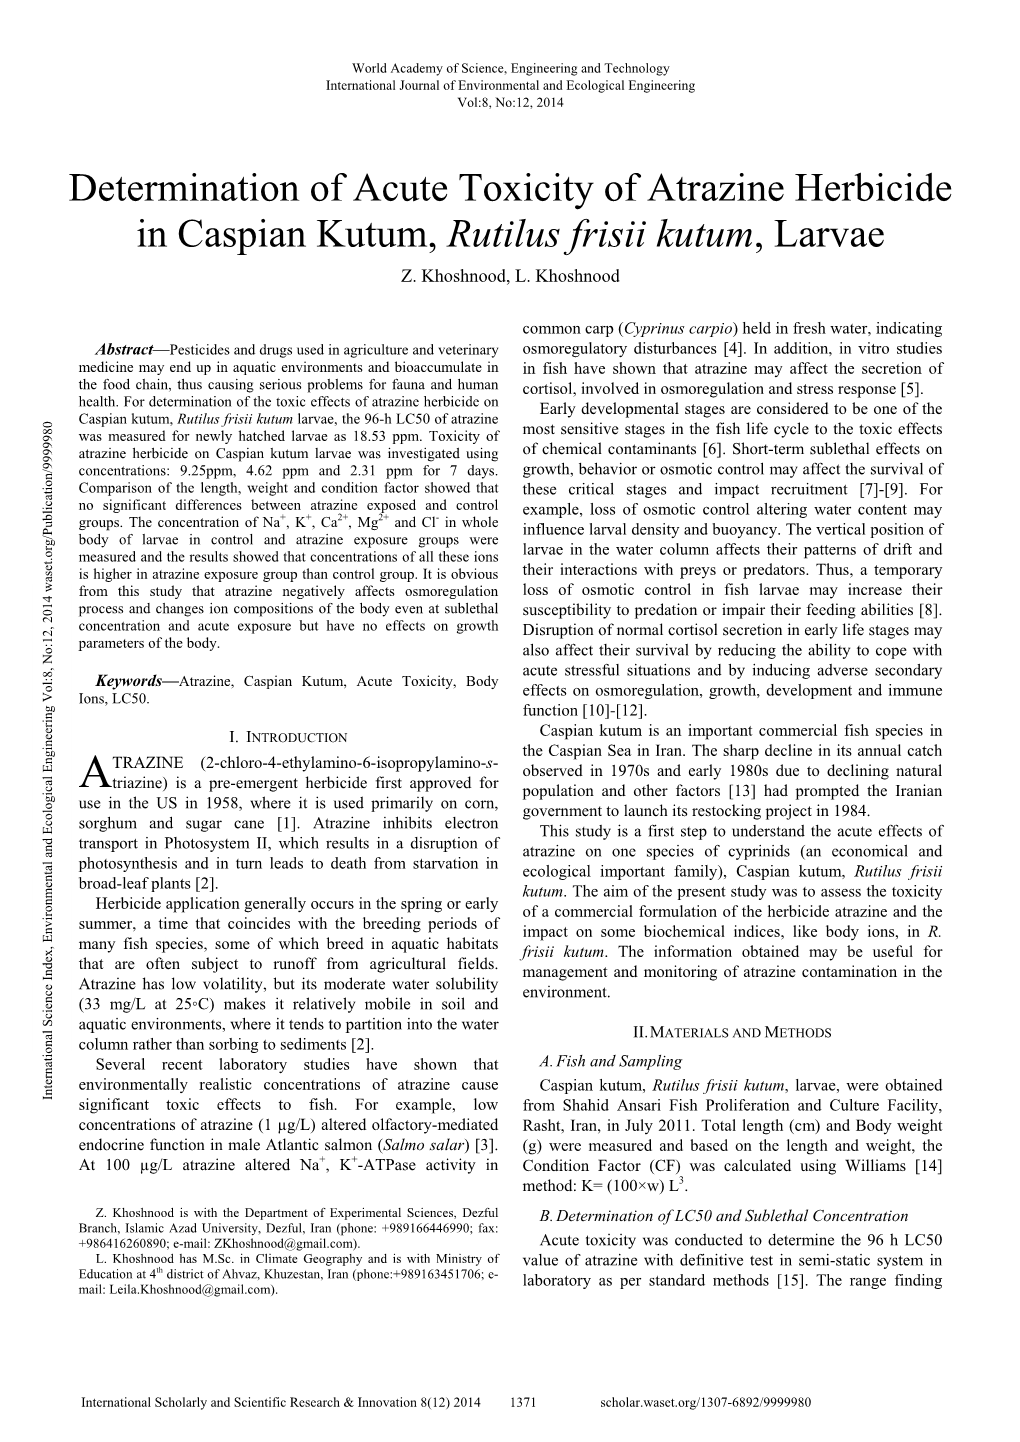 Determination of Acute Toxicity of Atrazine Herbicide in Caspian Kutum, Rutilus Frisii Kutum, Larvae Z